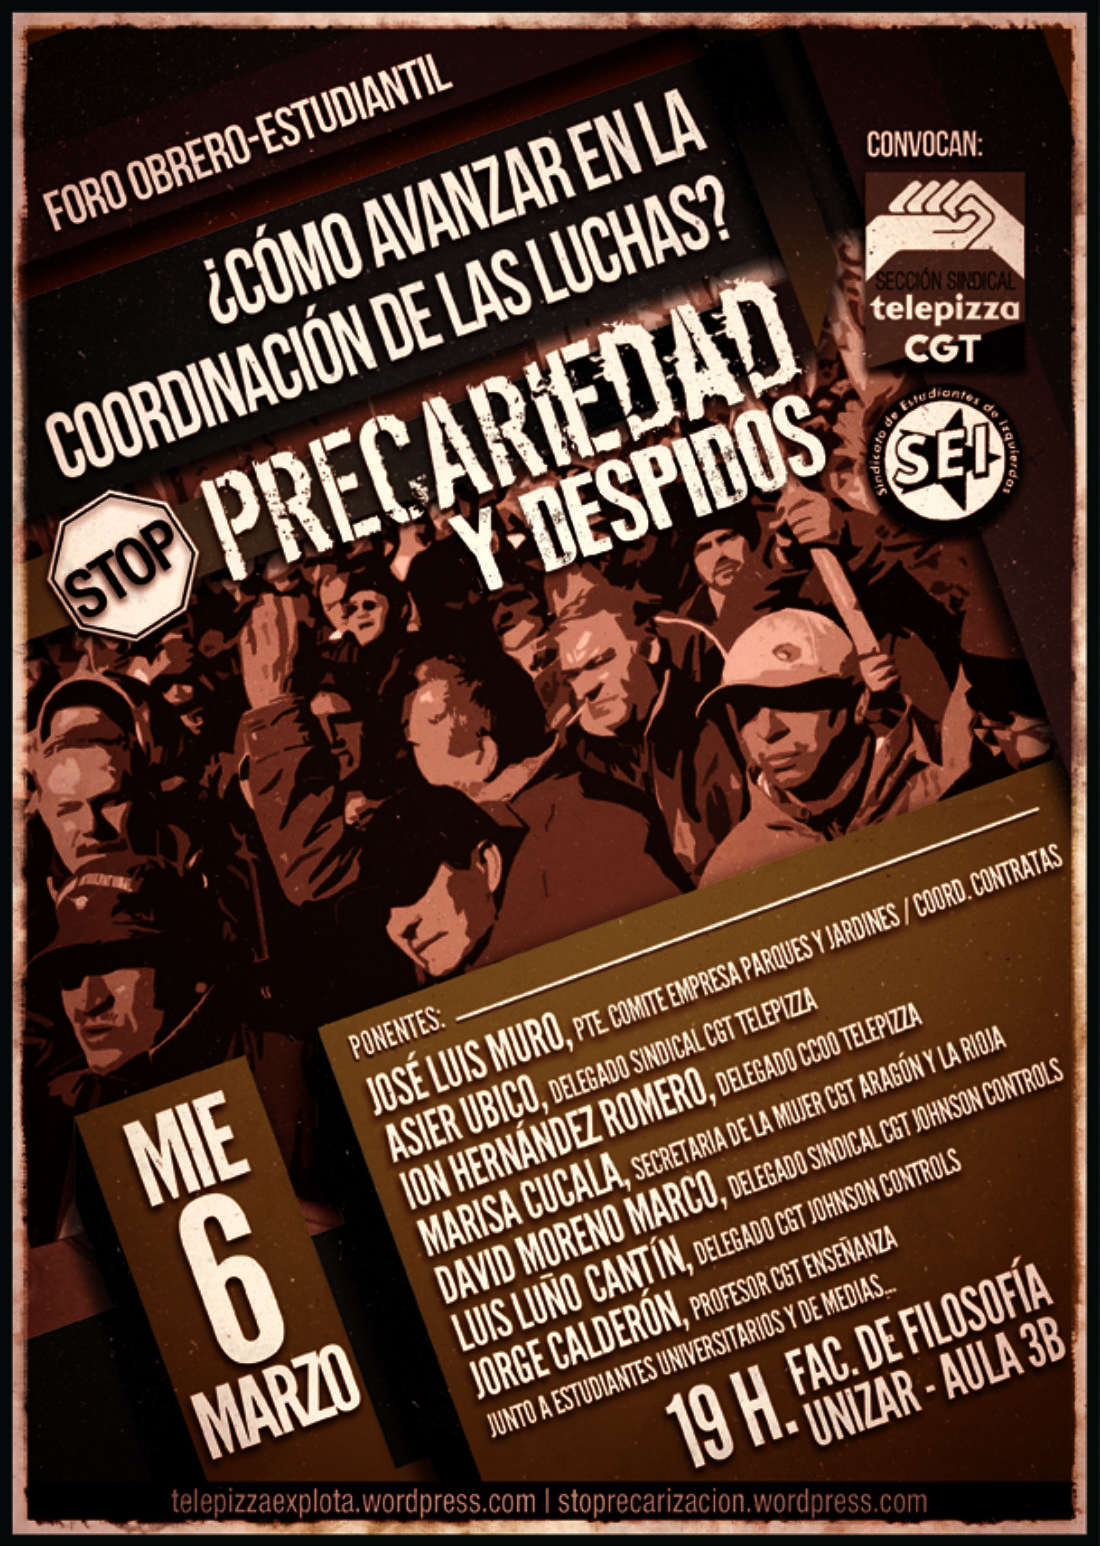 El Foro Obrero-Estudiantil tendrá lugar en Zaragoza el próximo 6 de marzo